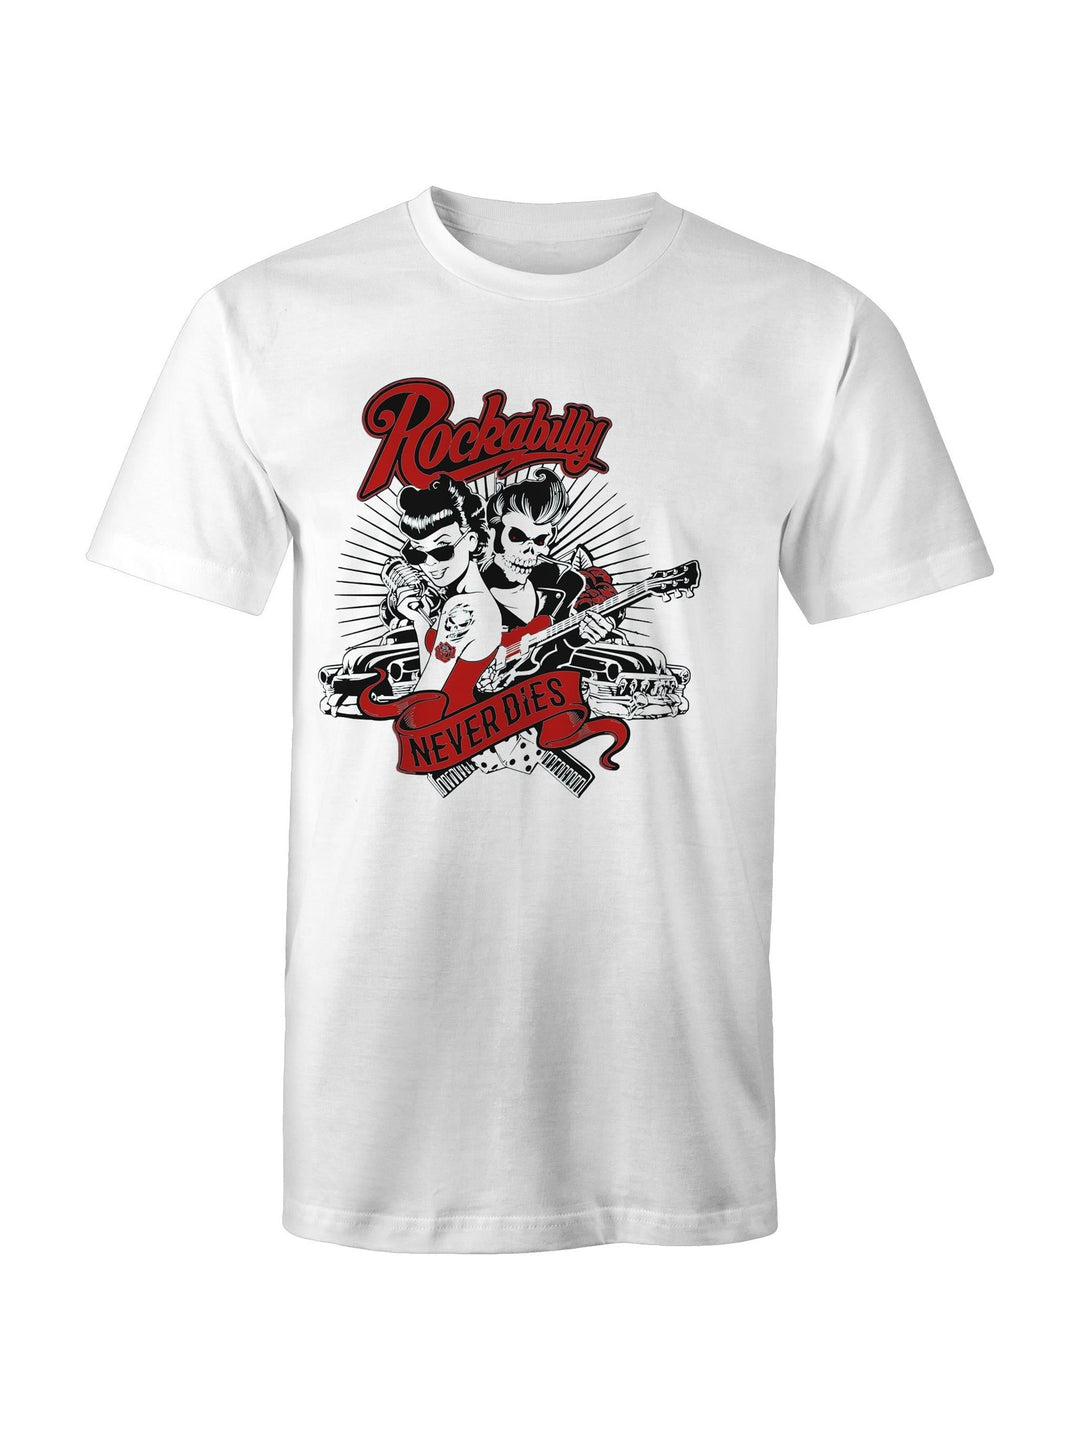 Rockabilly Never Dies - Mens T-Shirt